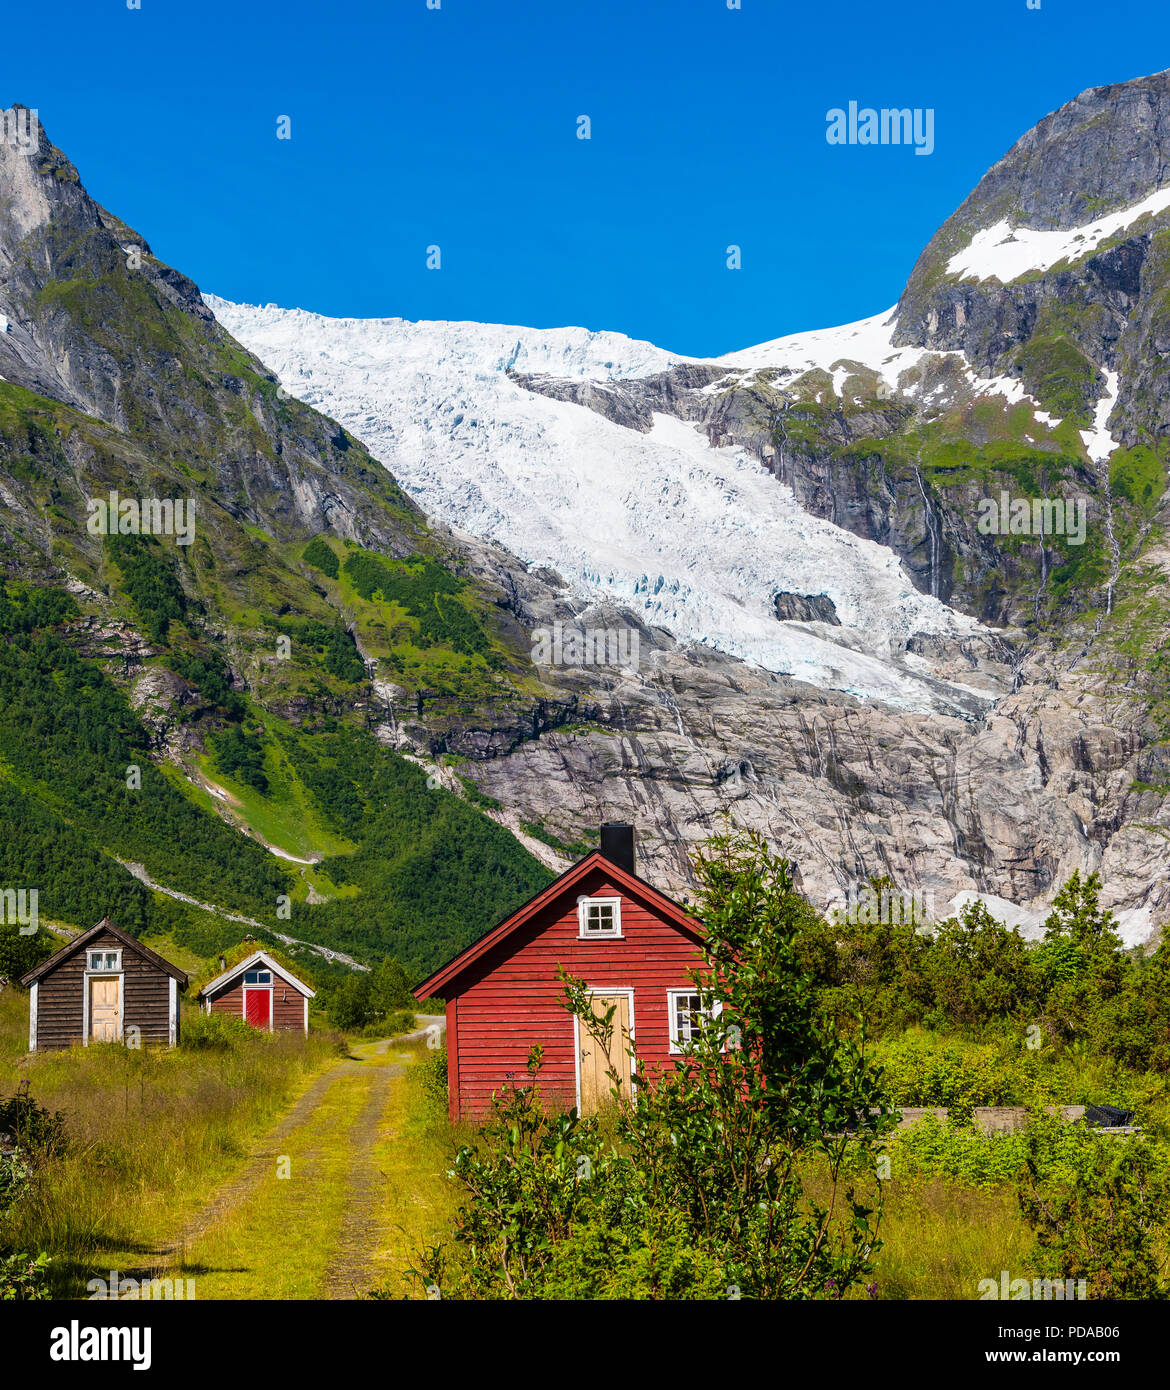 Bøyumbreen, un glacier dans l'ouest de la Norvège. Bøyumbreen ou Disneyland Paris, est un bras de la Norvège, le plus grand glacier Jostedalsbreen en Sogn og Fjordane. Banque D'Images